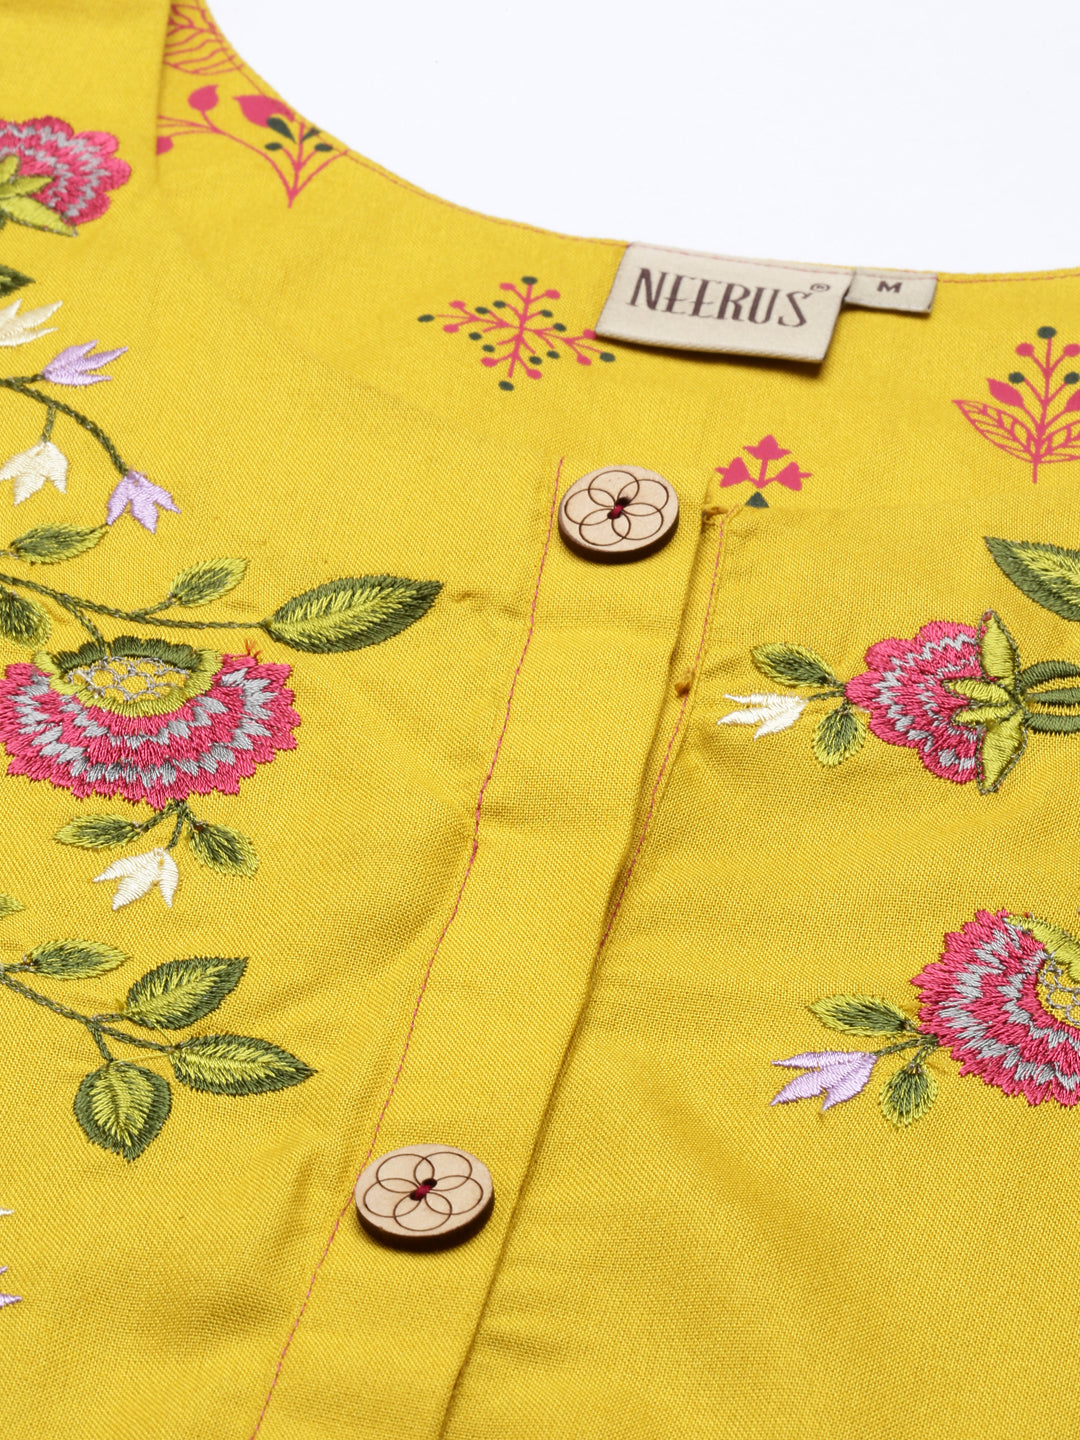 Neeru's Mustard Color Rayon Fabric Tunic